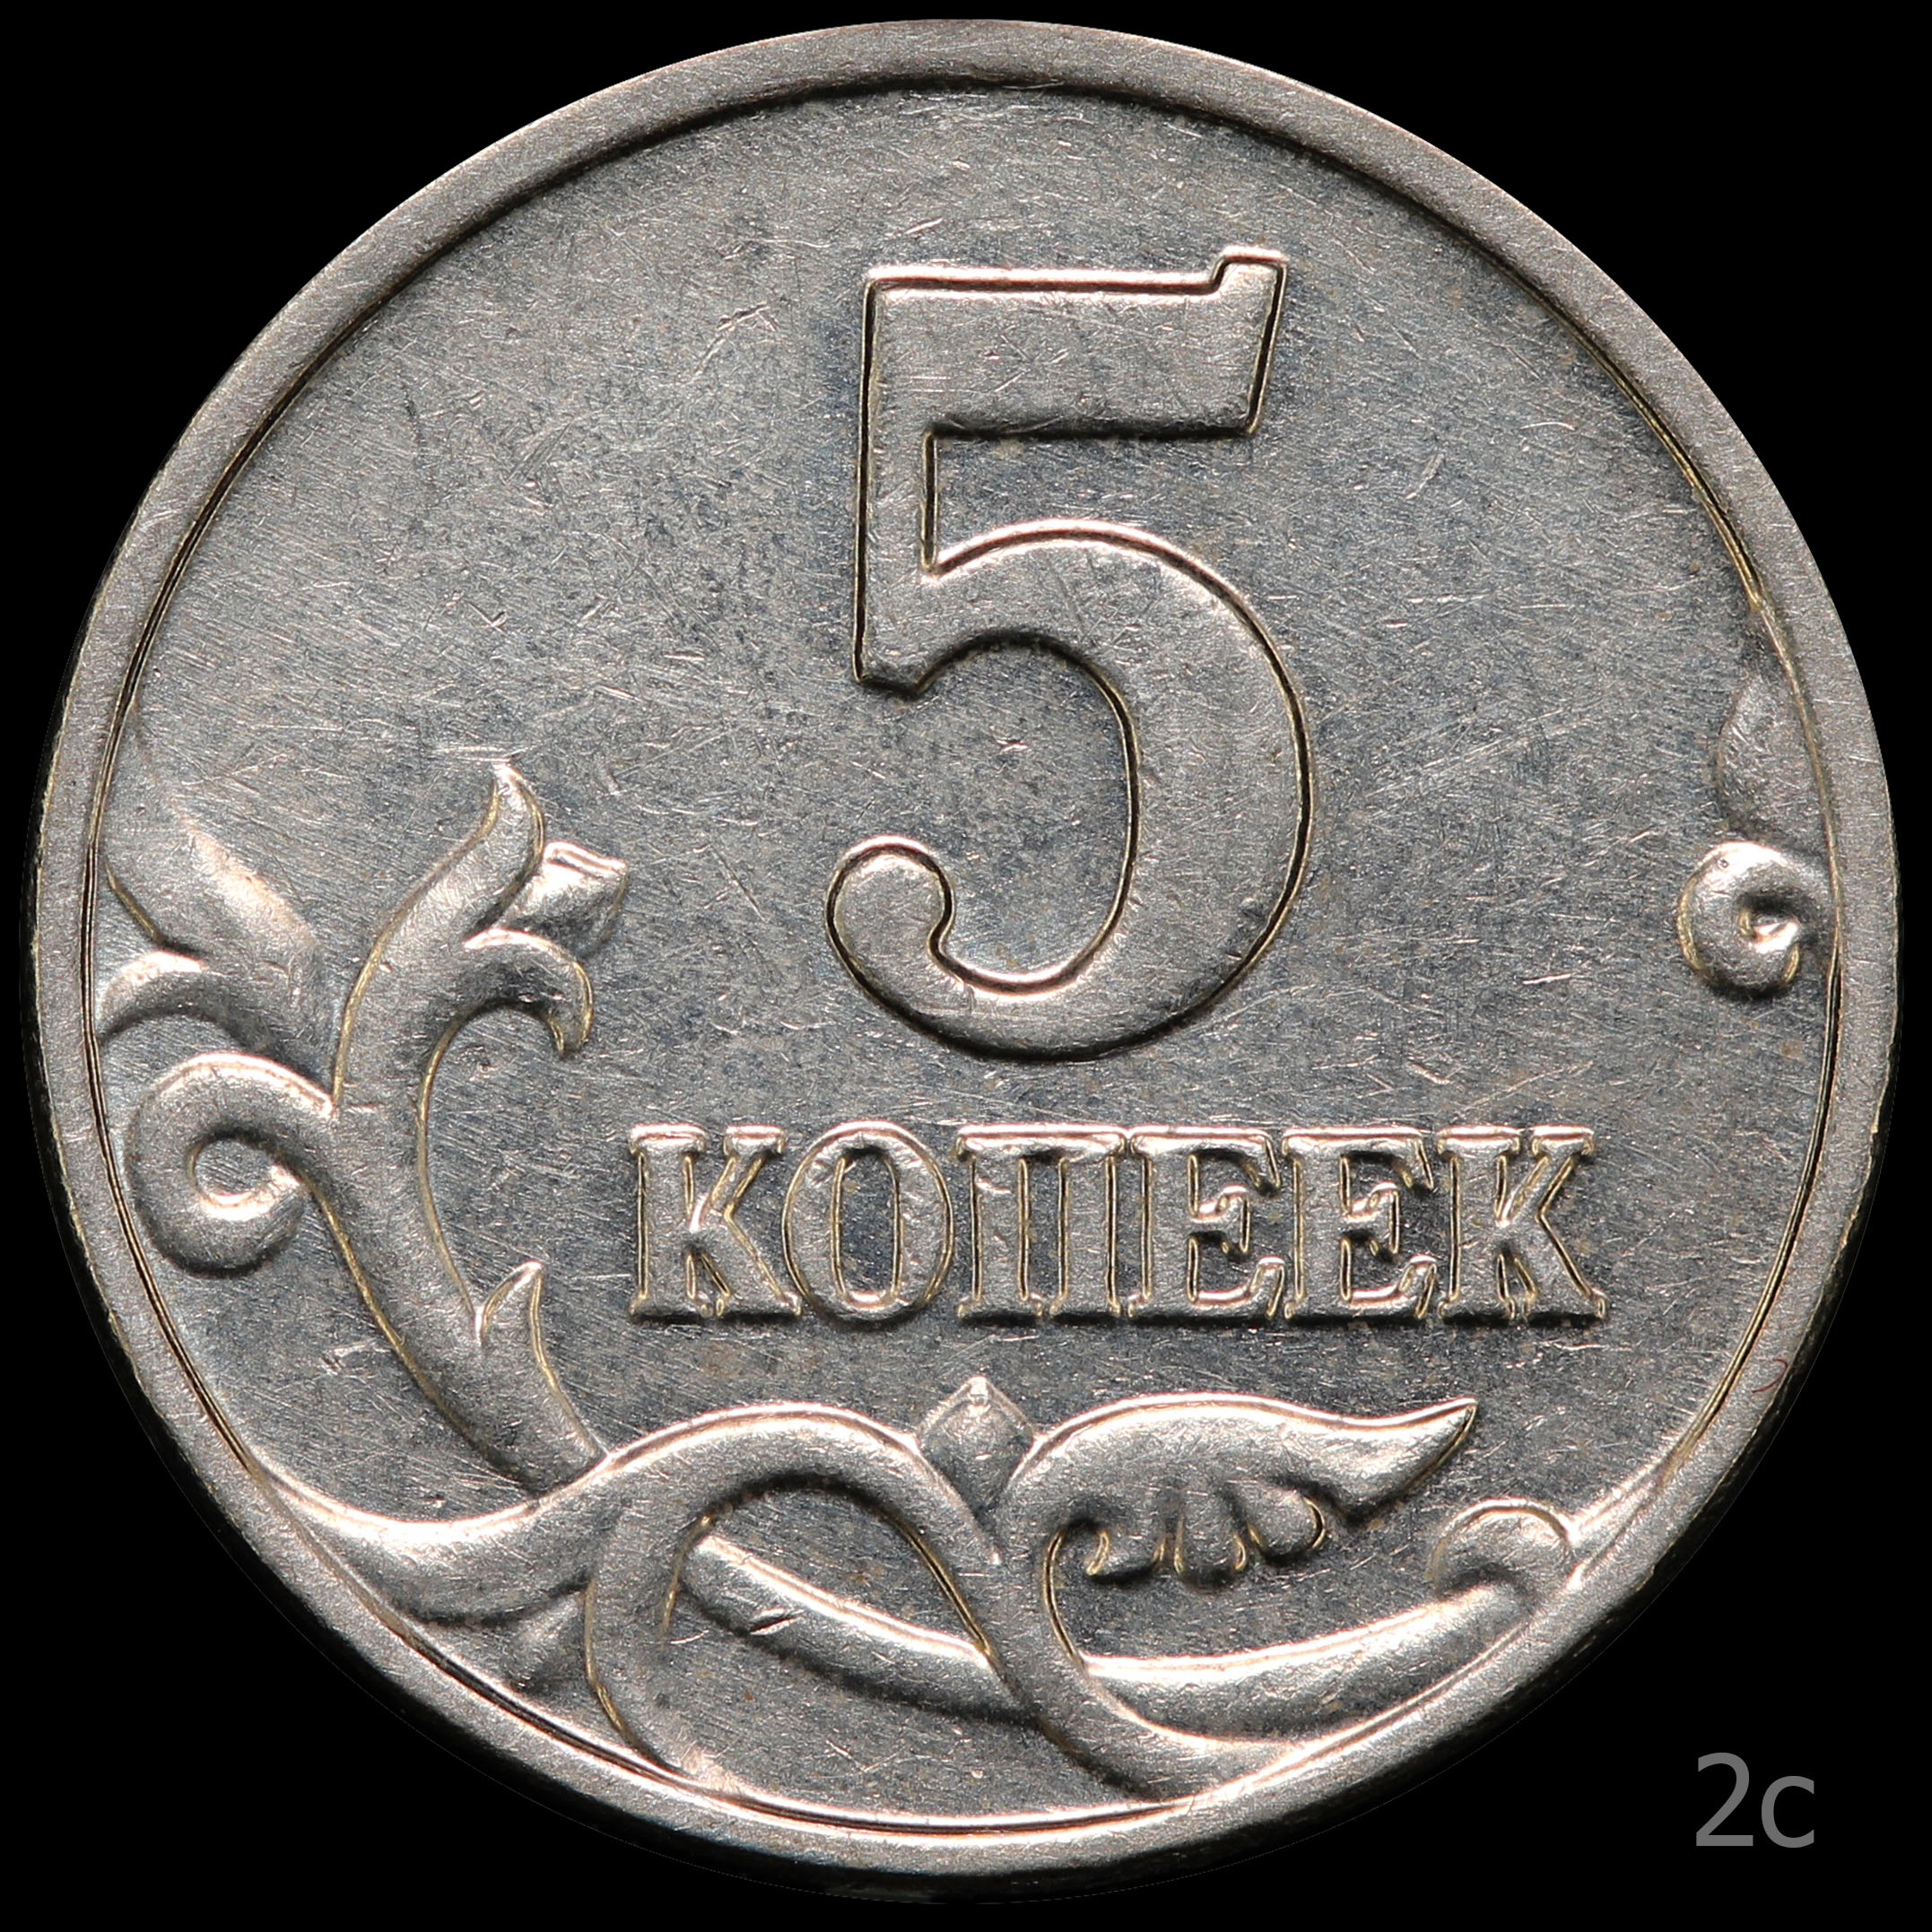 3 рубля 5 копеек. 5 Копеек 2003. 5 Копеек 2003 обычная. Штемпель для монет.